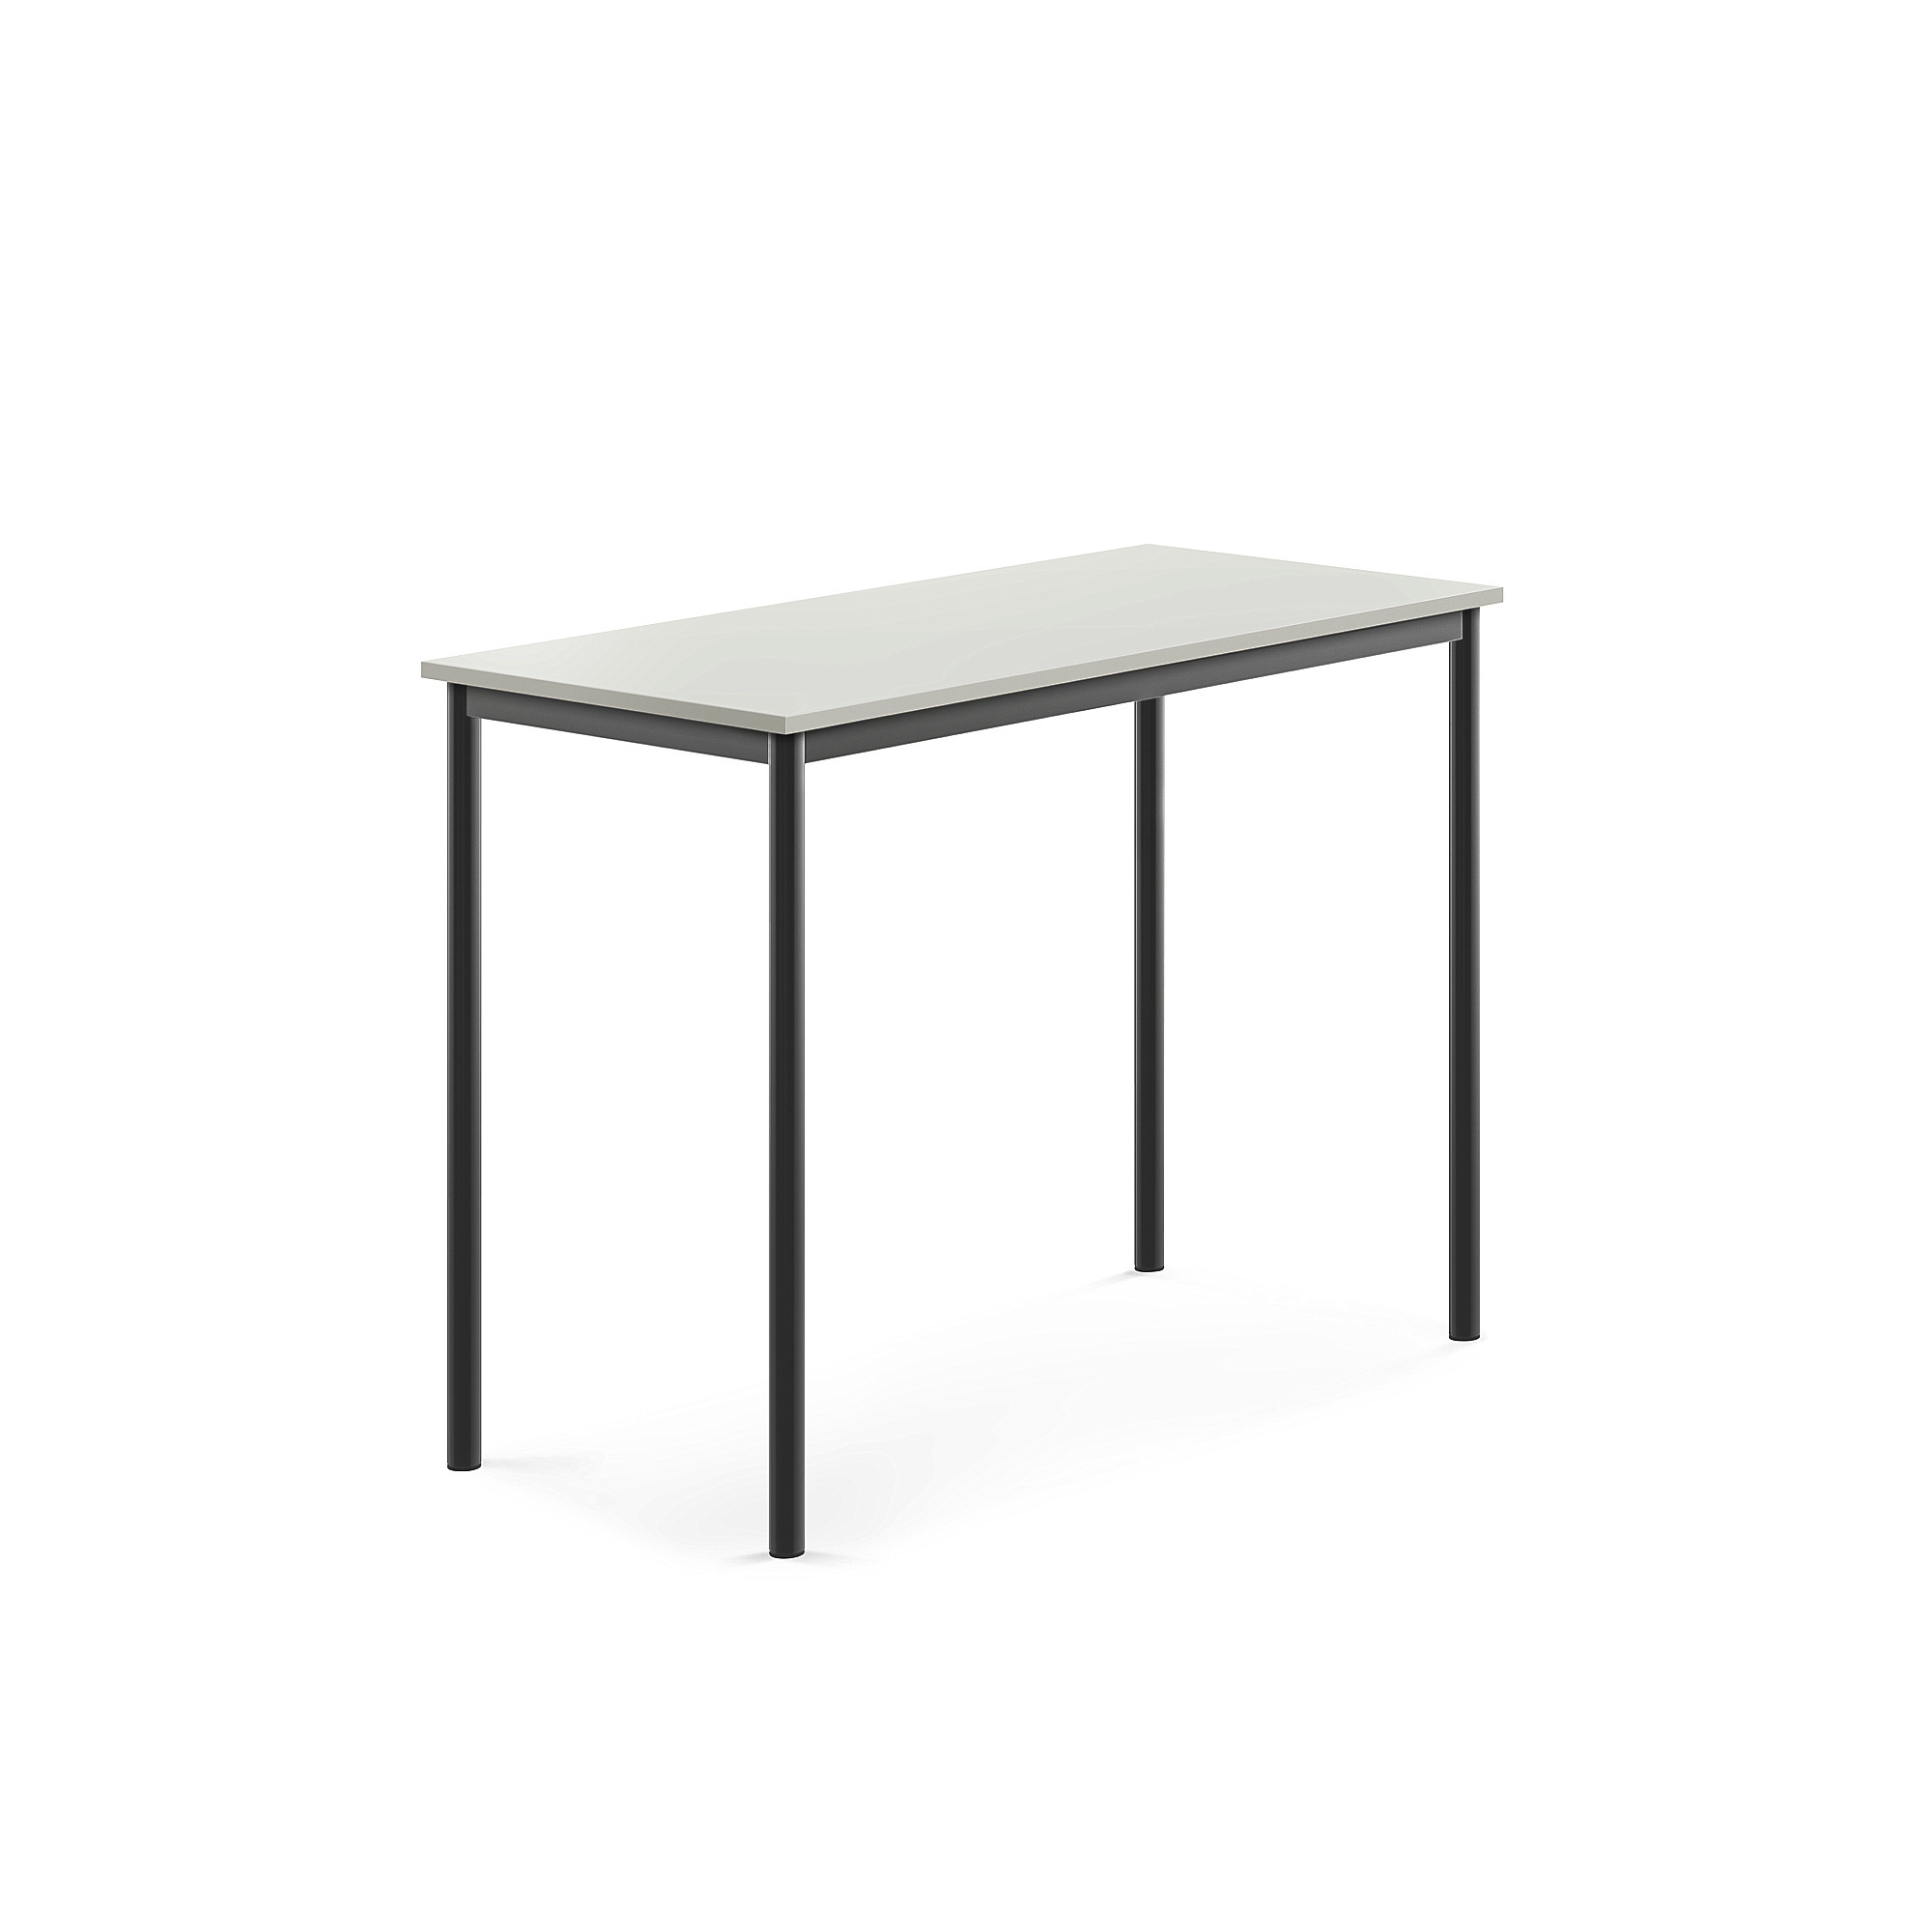 Stůl SONITUS, 1200x600x900 mm, antracitově šedé nohy, HPL deska tlumící hluk, šedá